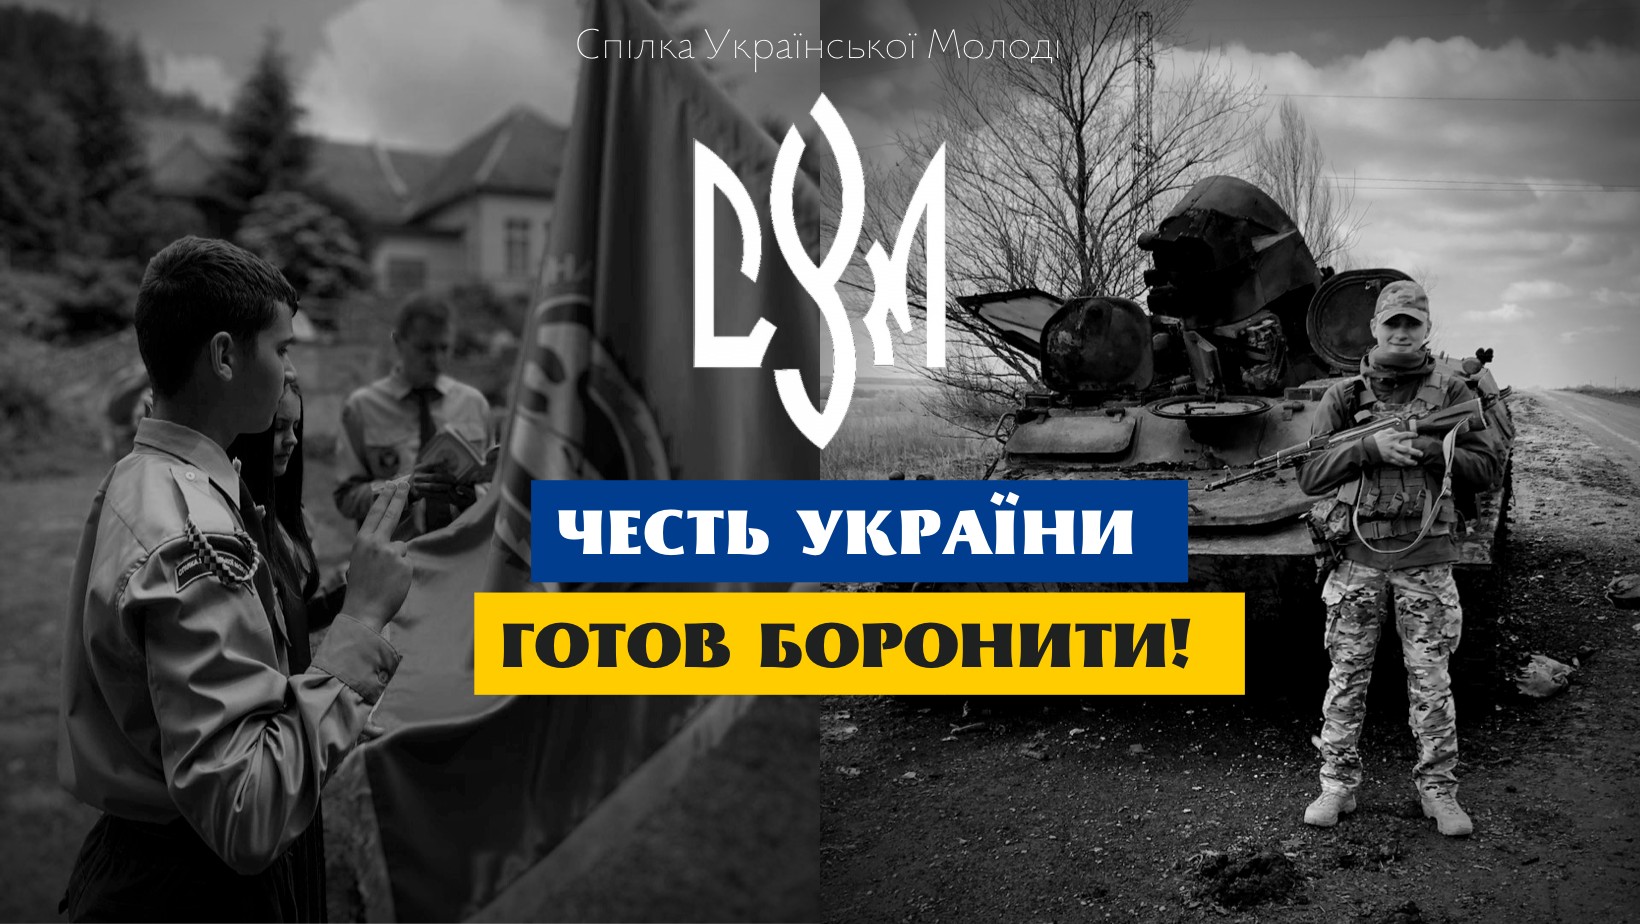 Спілка Української Молоді, Світова Управа